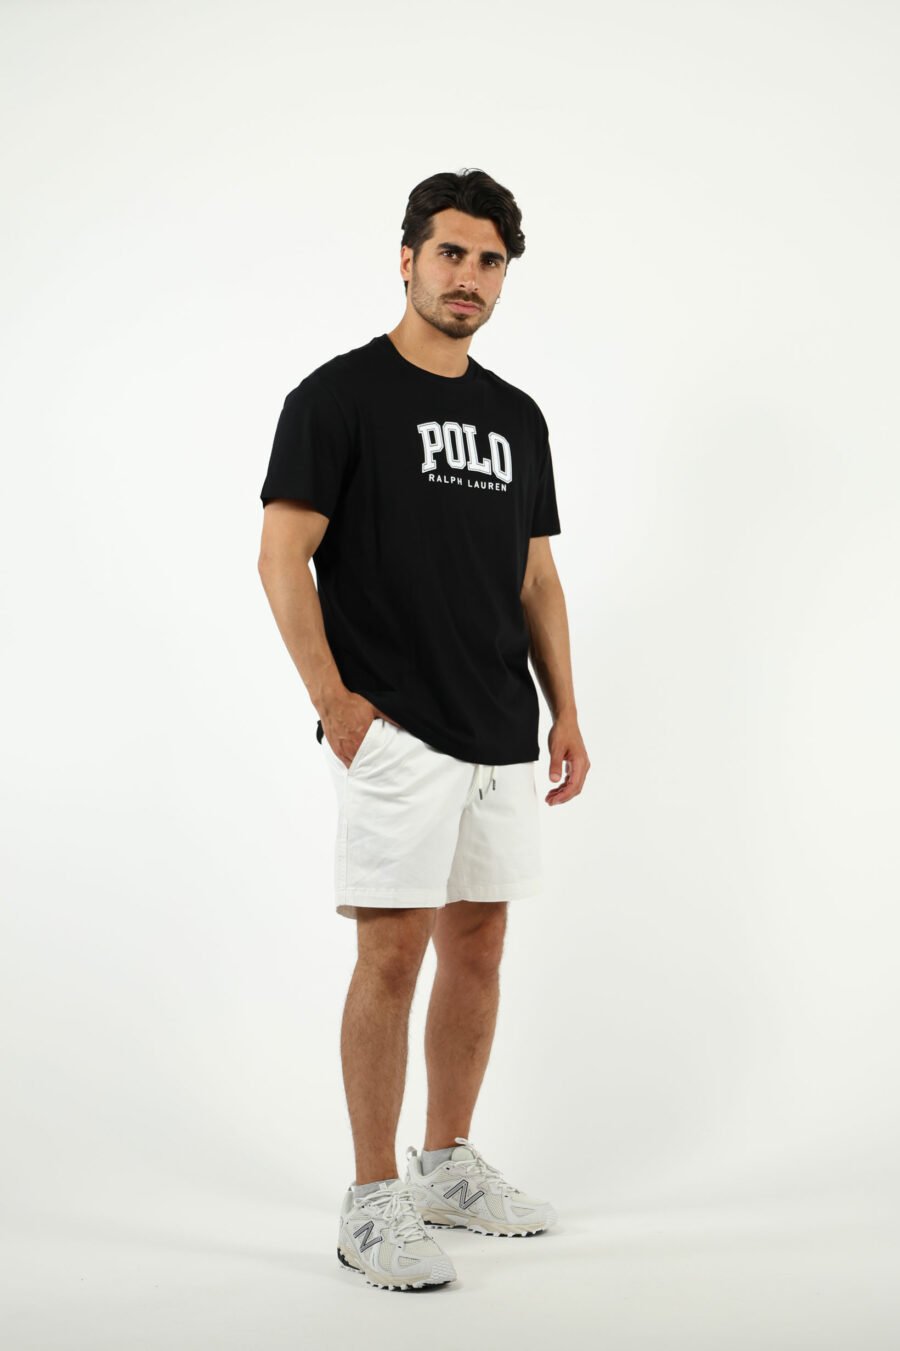 Camiseta negra con maxilogo "polo" en blanco - number14017